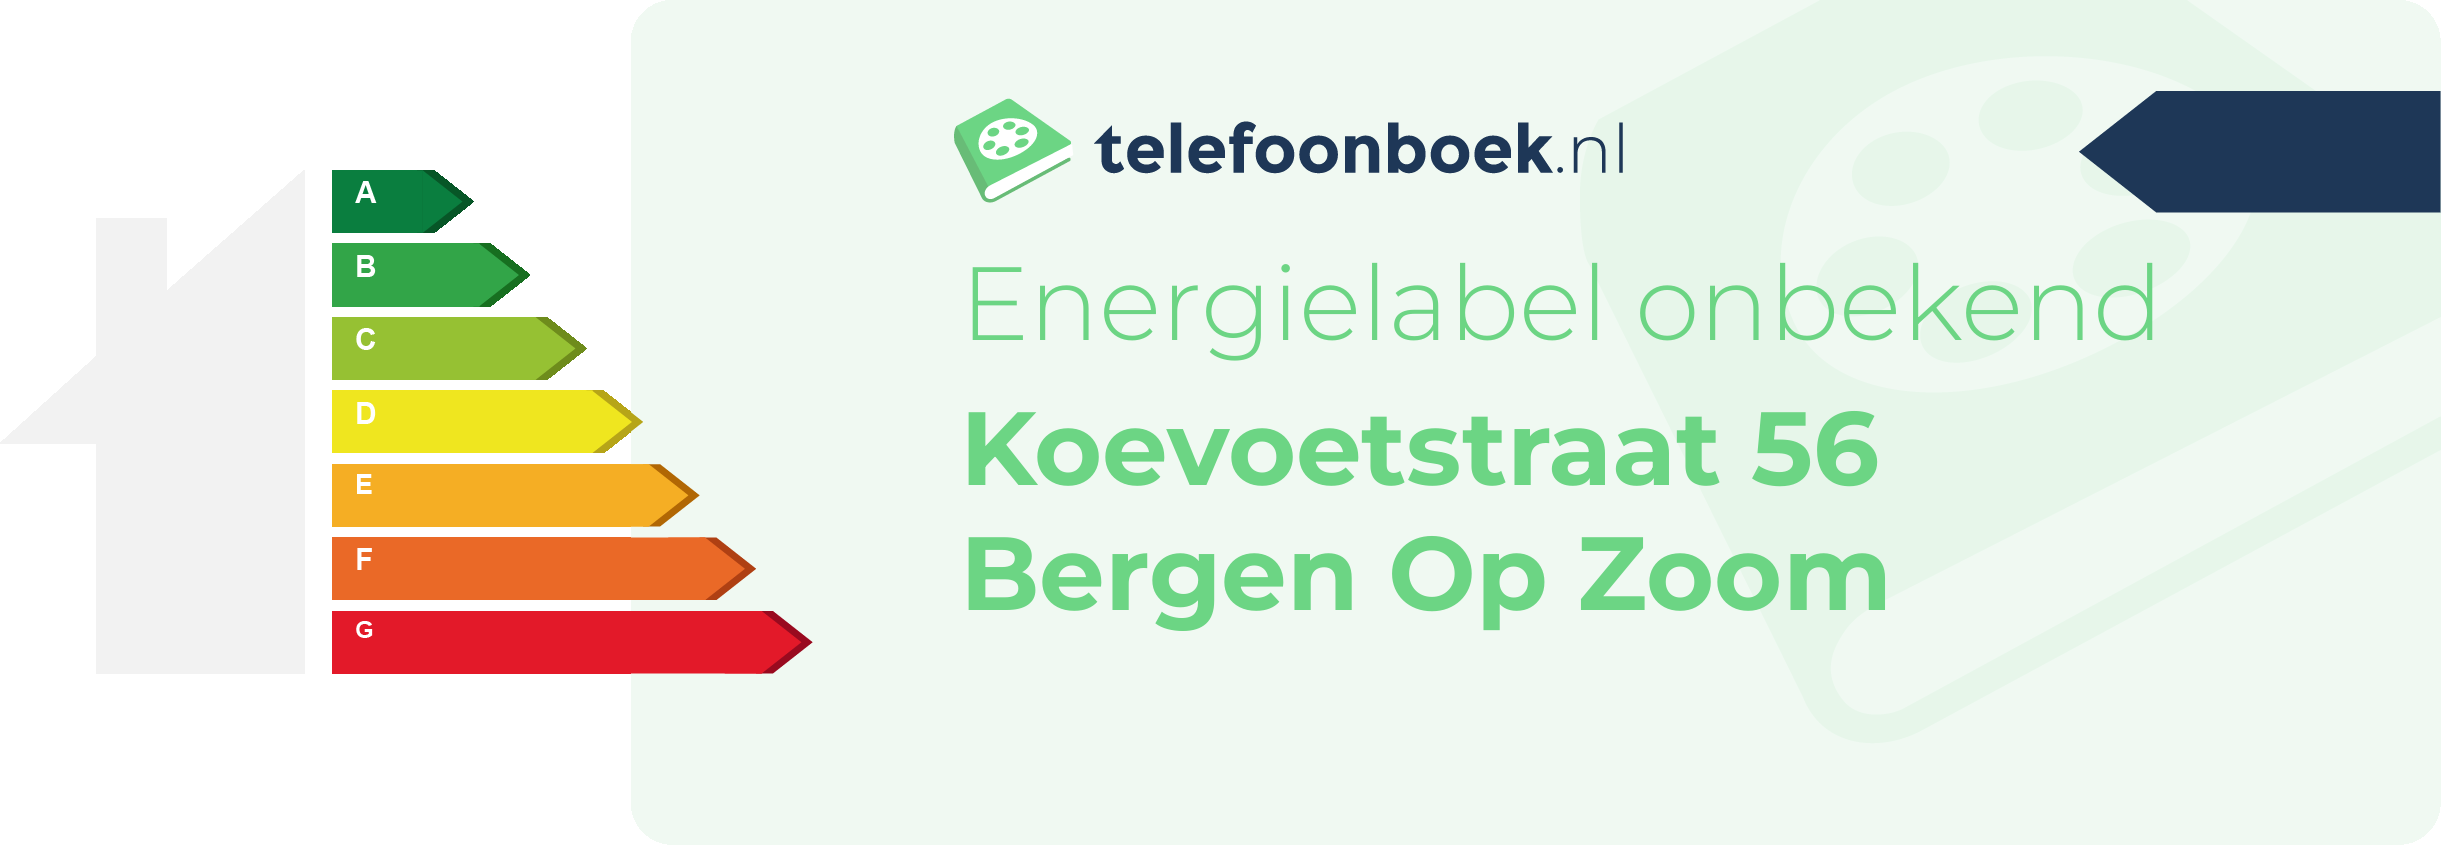 Energielabel Koevoetstraat 56 Bergen Op Zoom